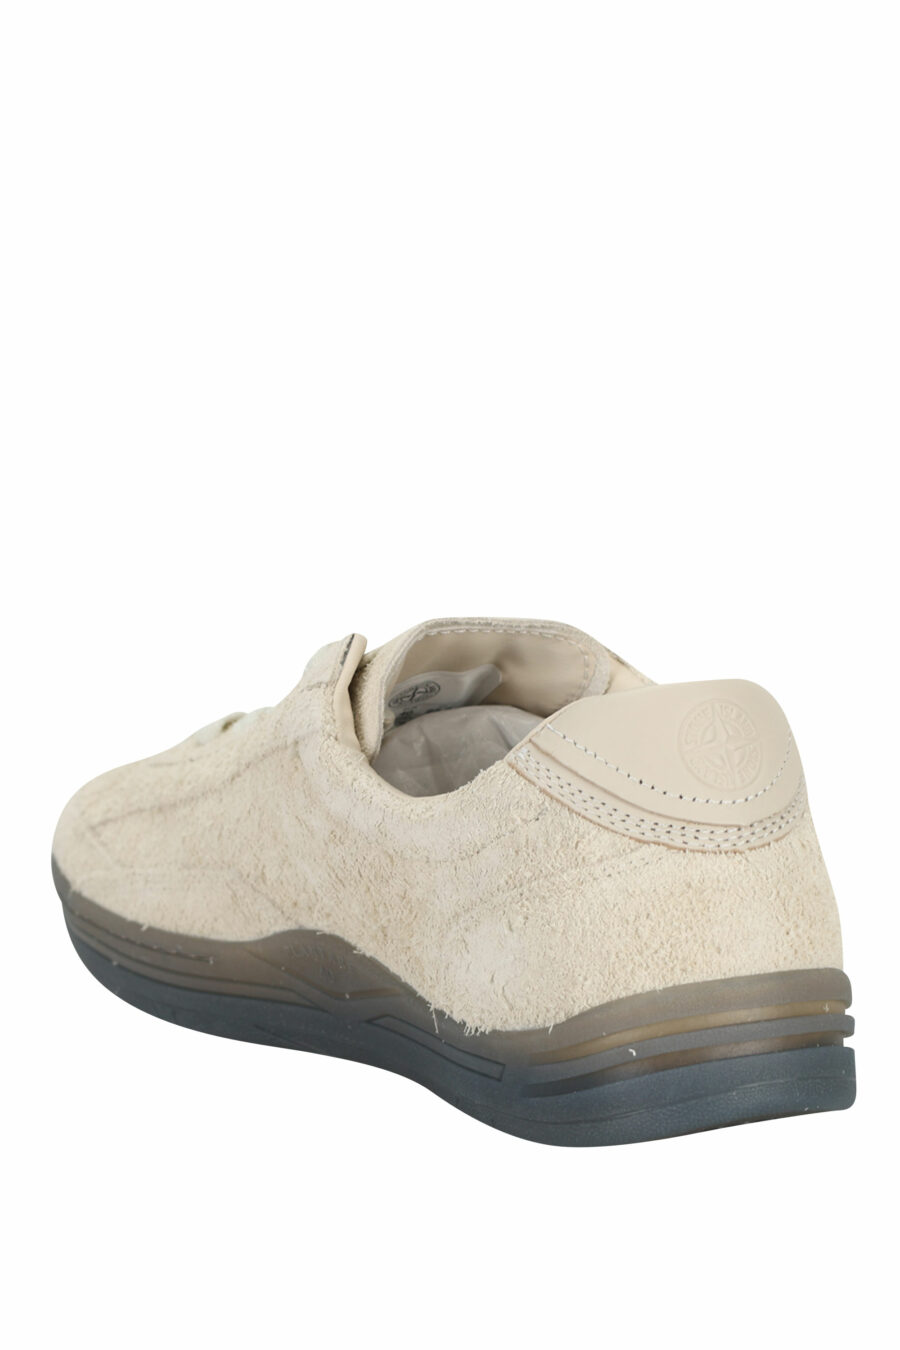 Zapatillas beige con minilogo y suela gris - 8052572915505 3